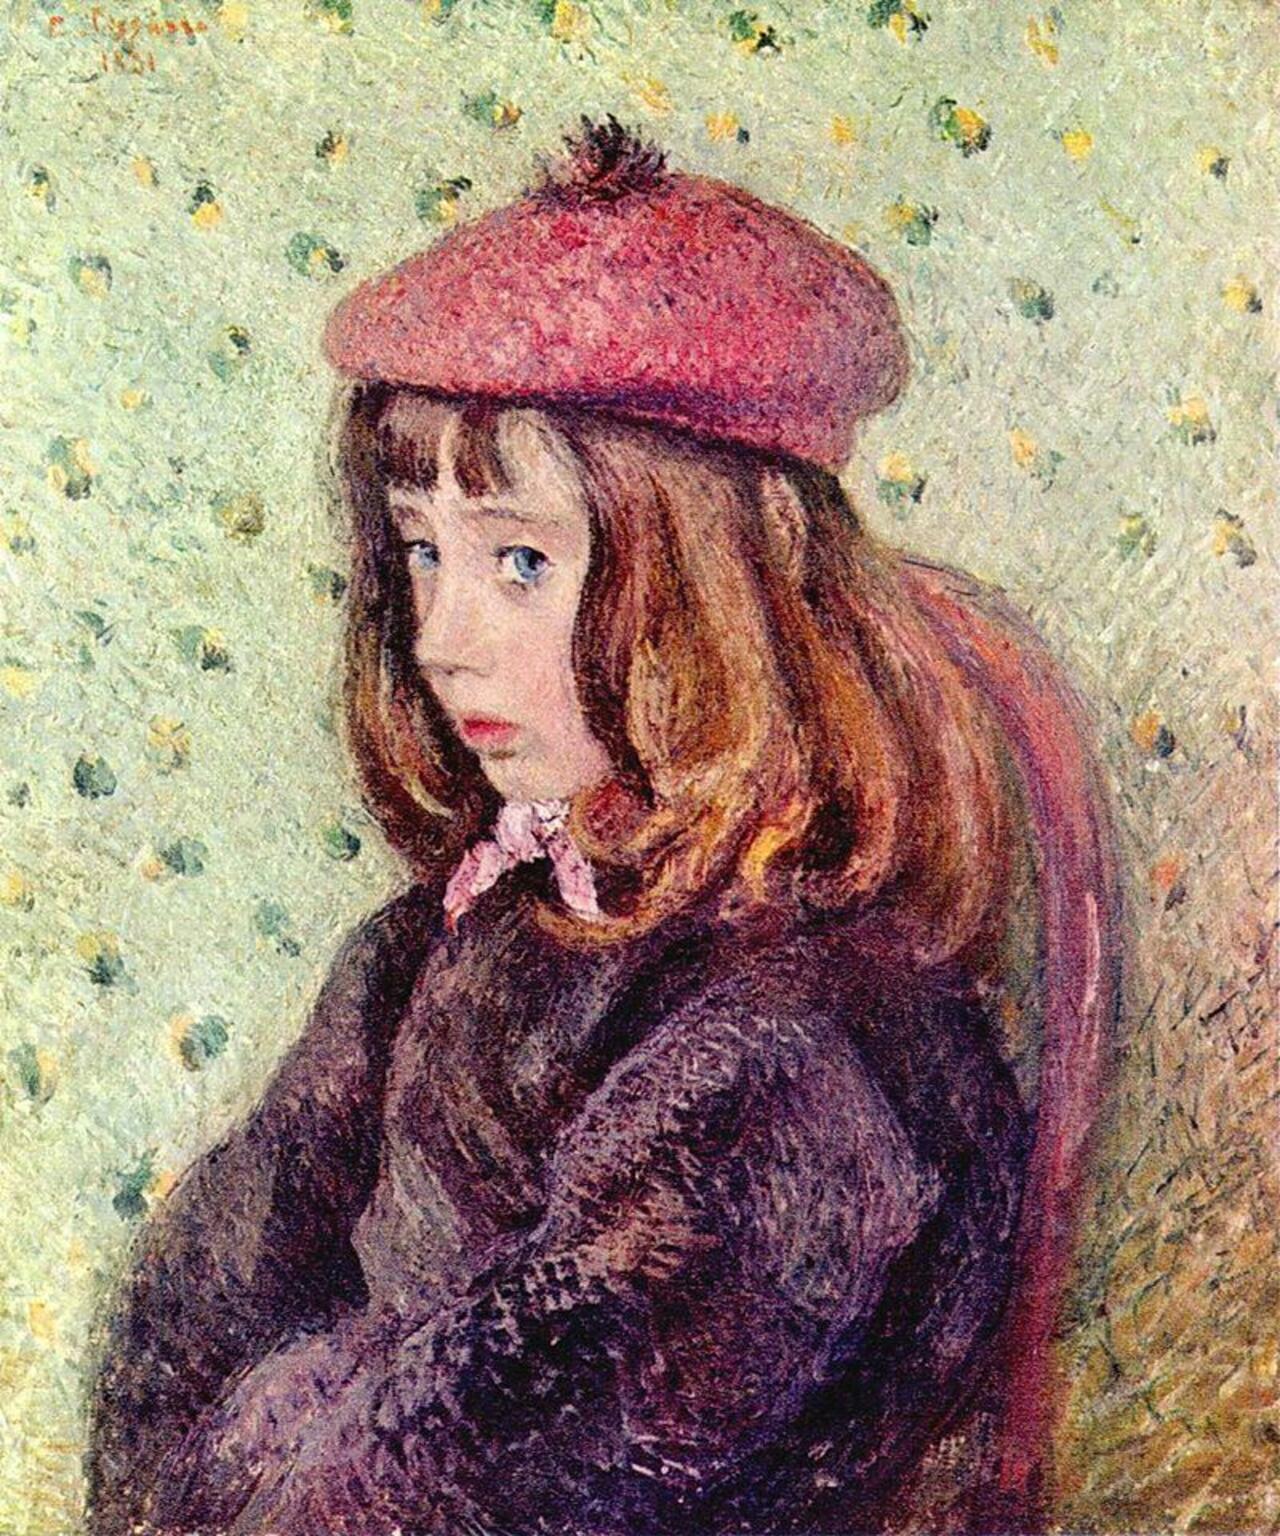 Portrait of Felix Pissarro - Camille Pissarro
1881 http://t.co/KKEQA7oV4J